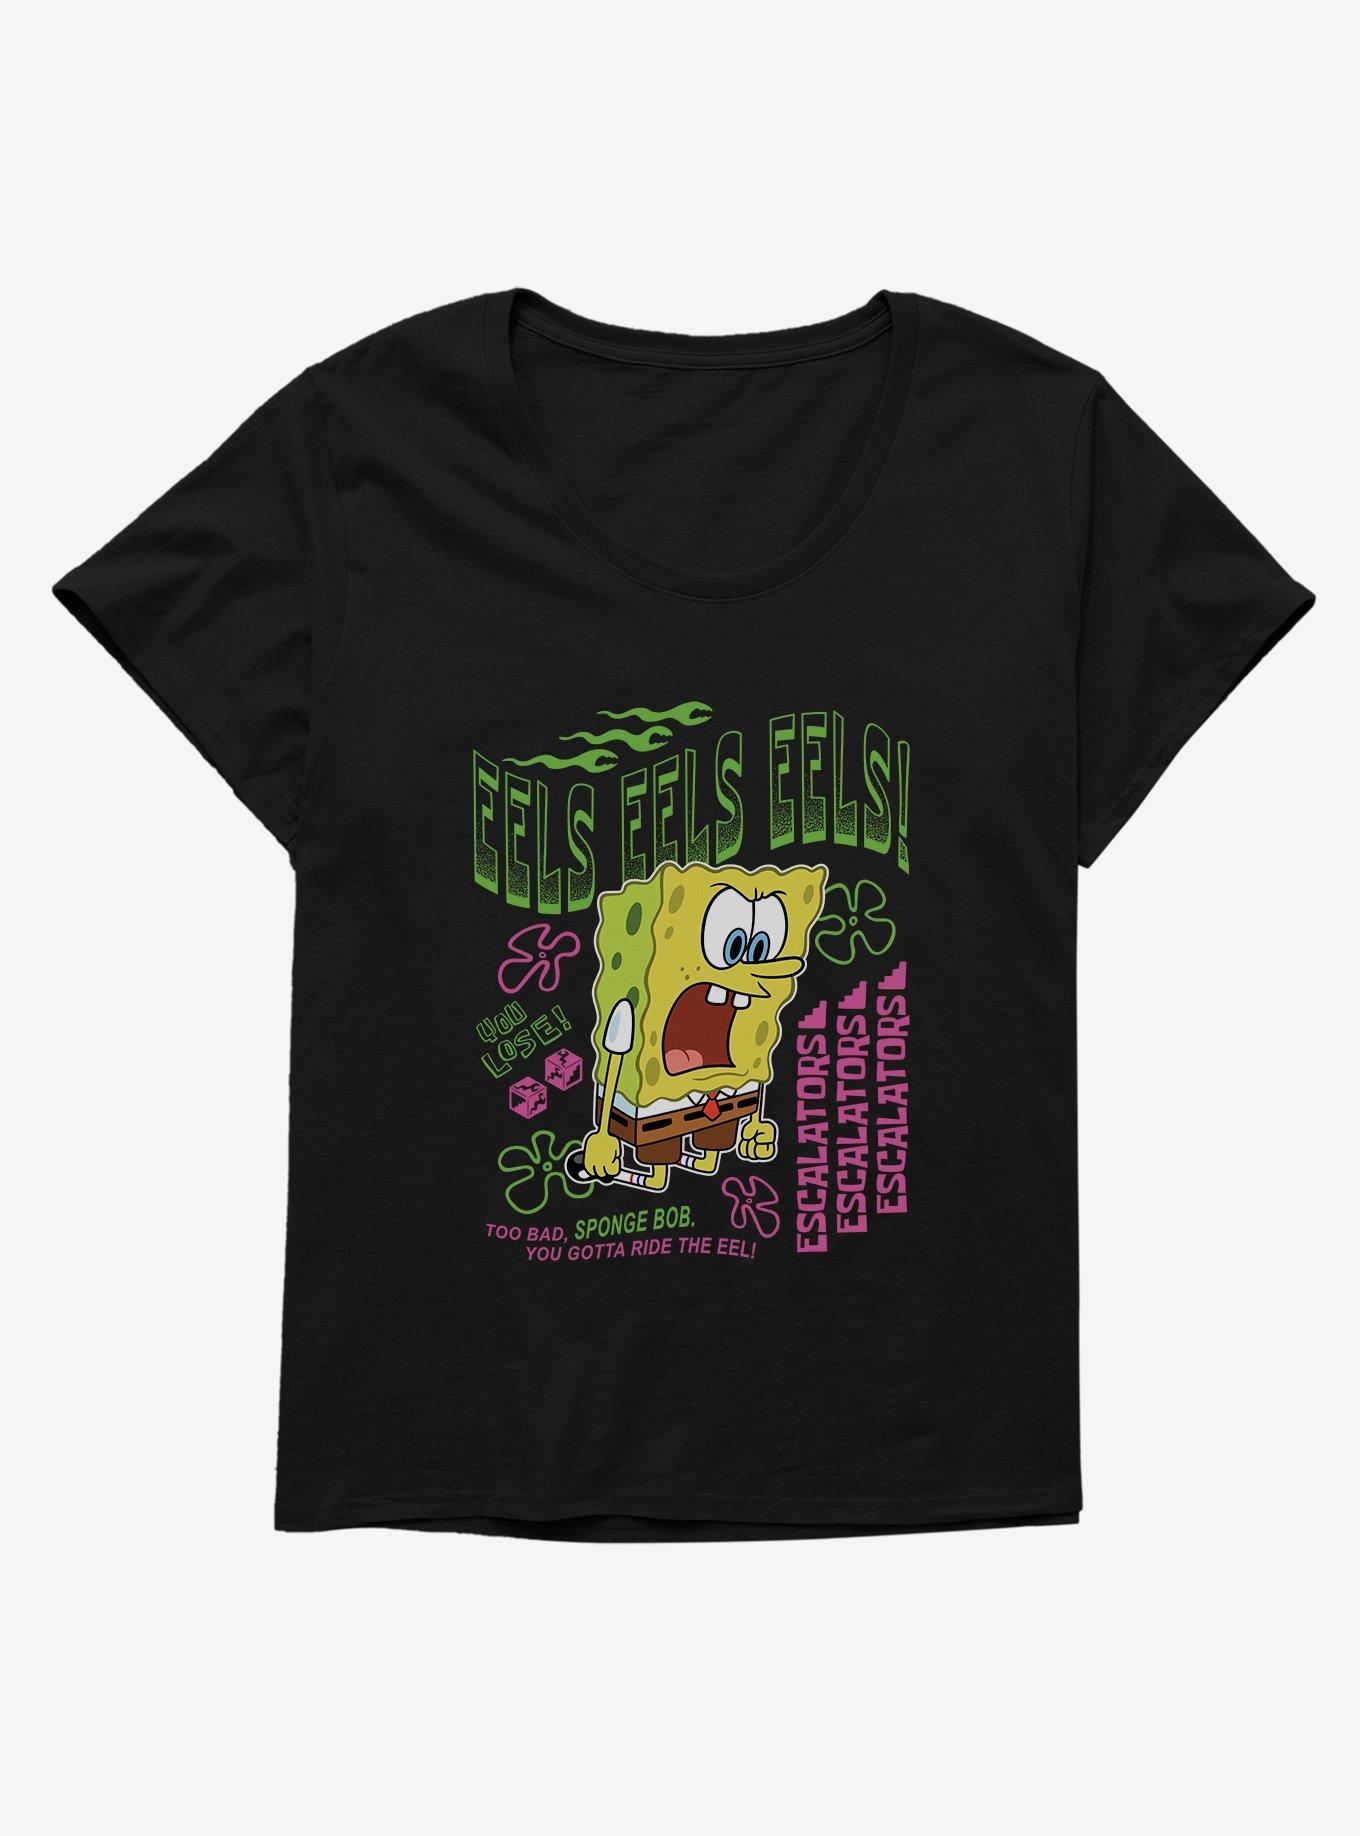 SpongeBob SquarePants Eels Eels Eels Girls T-Shirt Plus Size, , hi-res